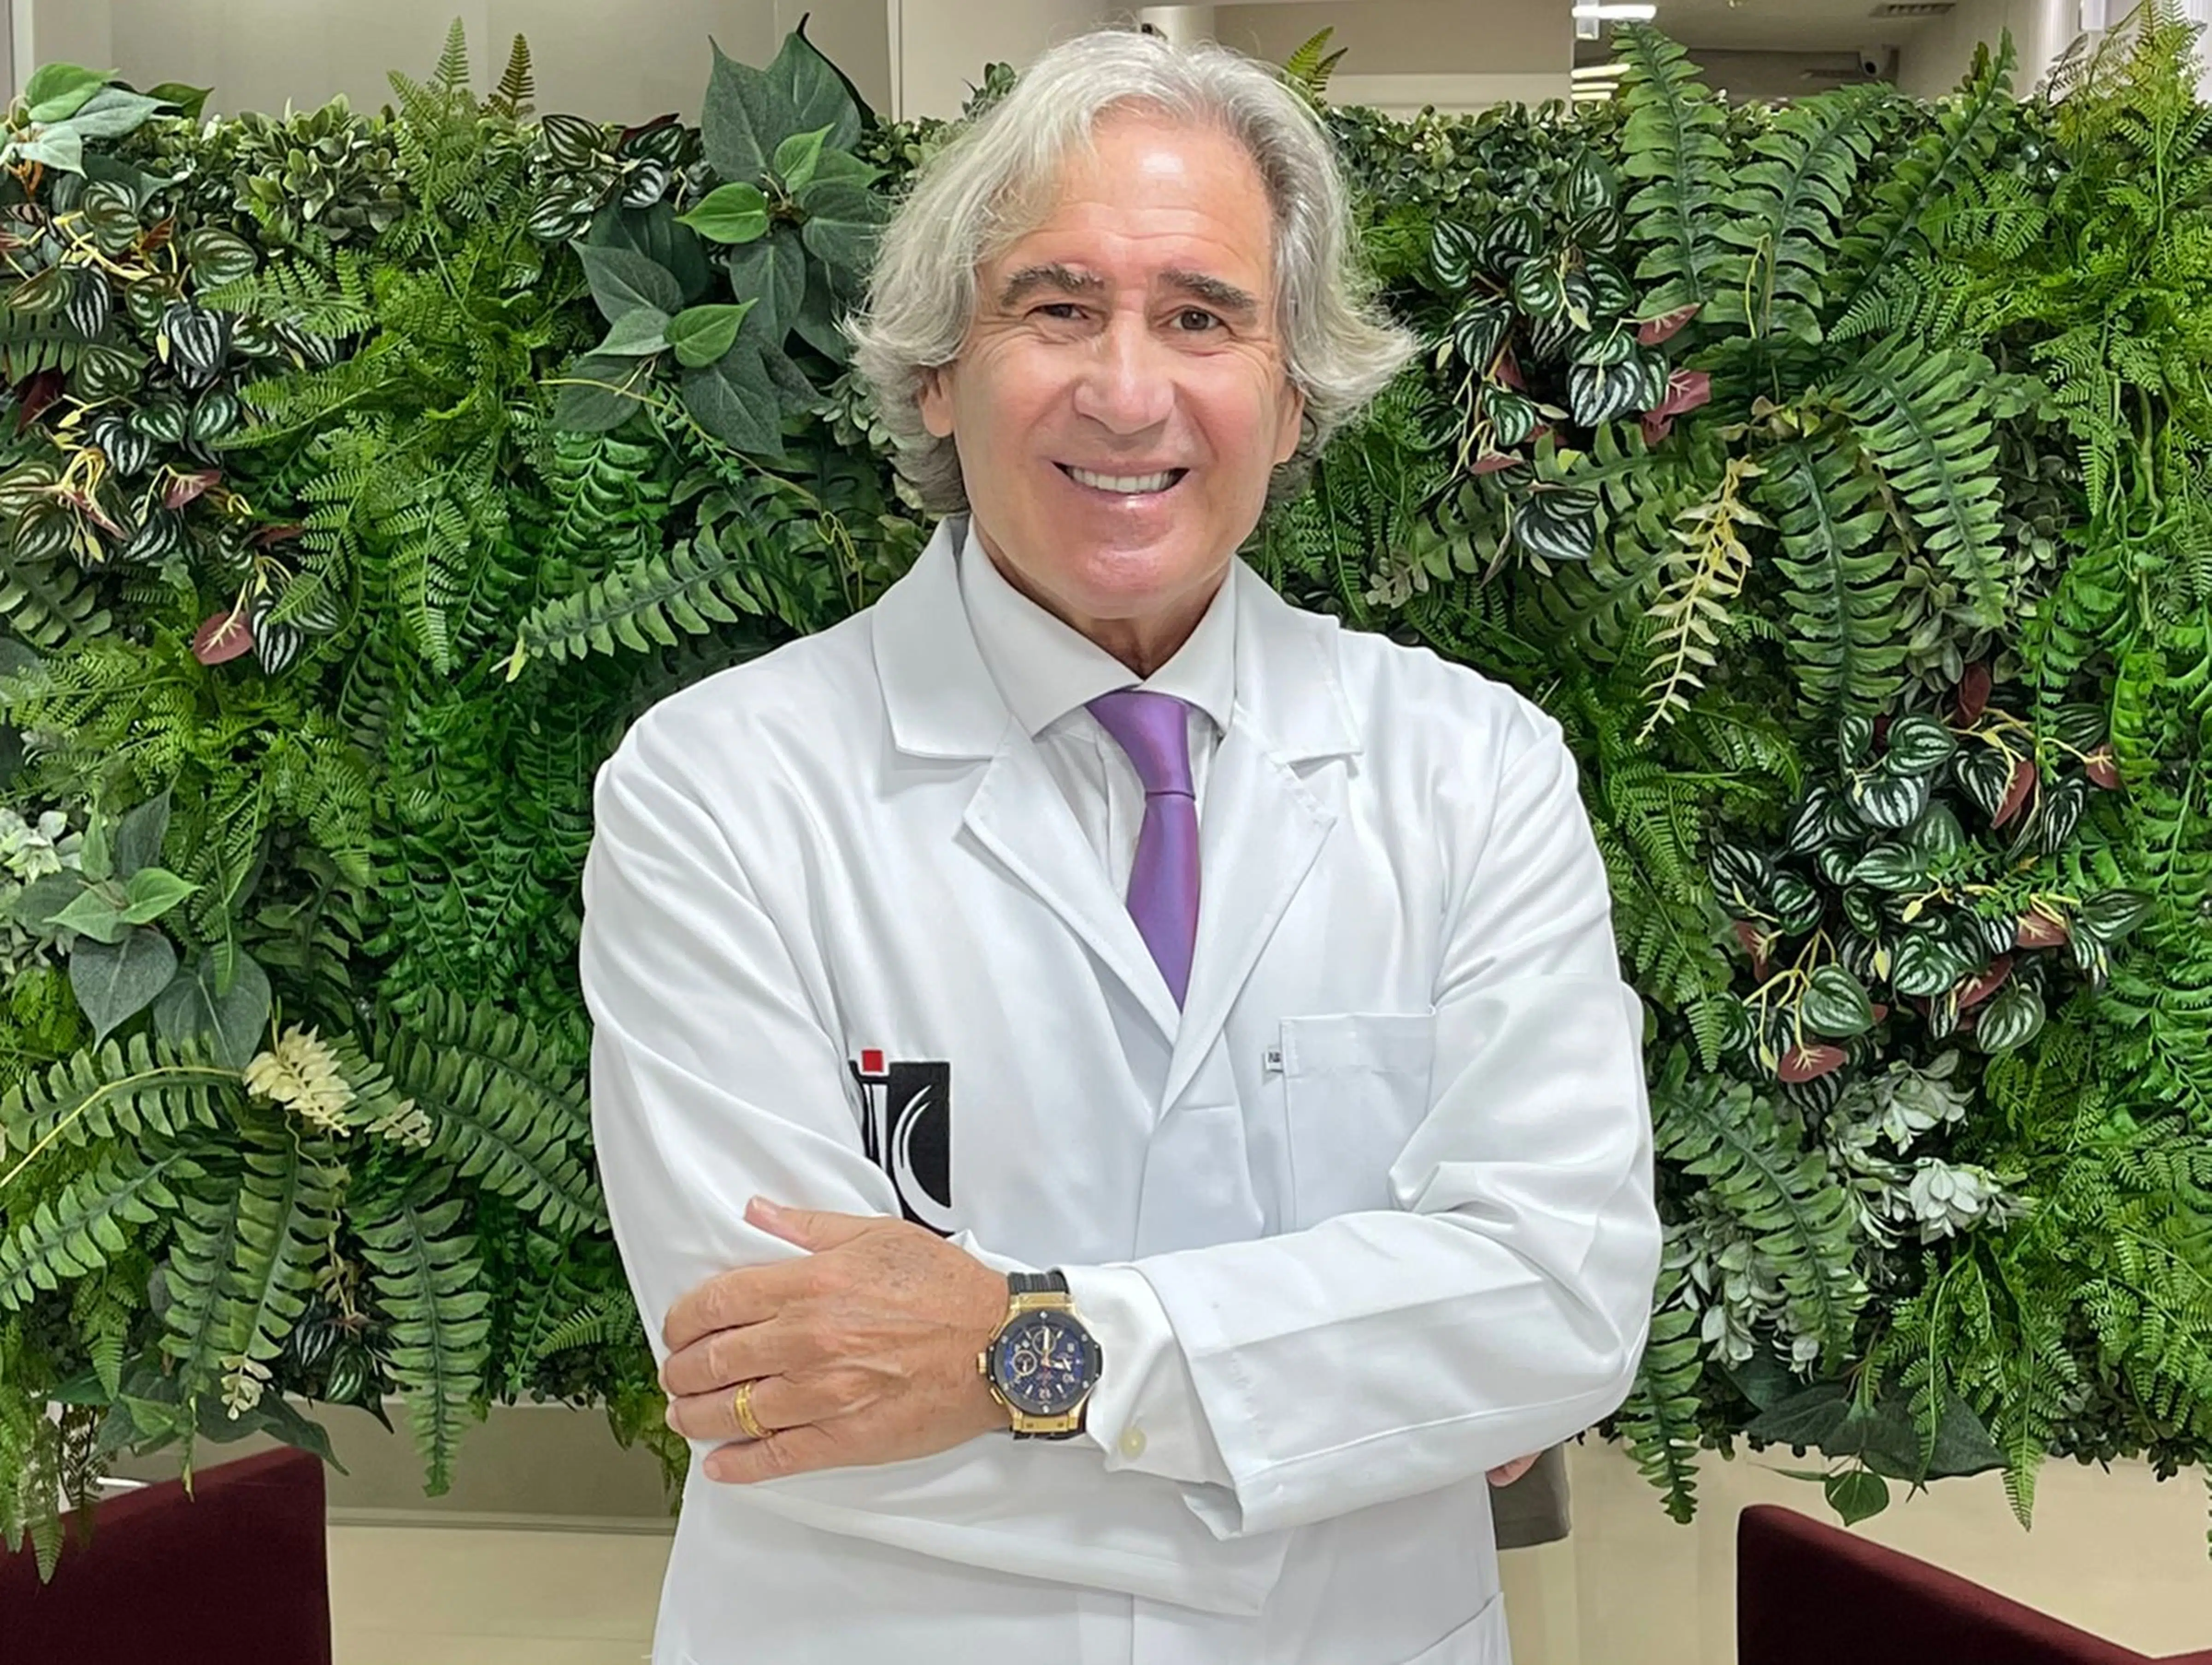 Dr Luciano Barsanti